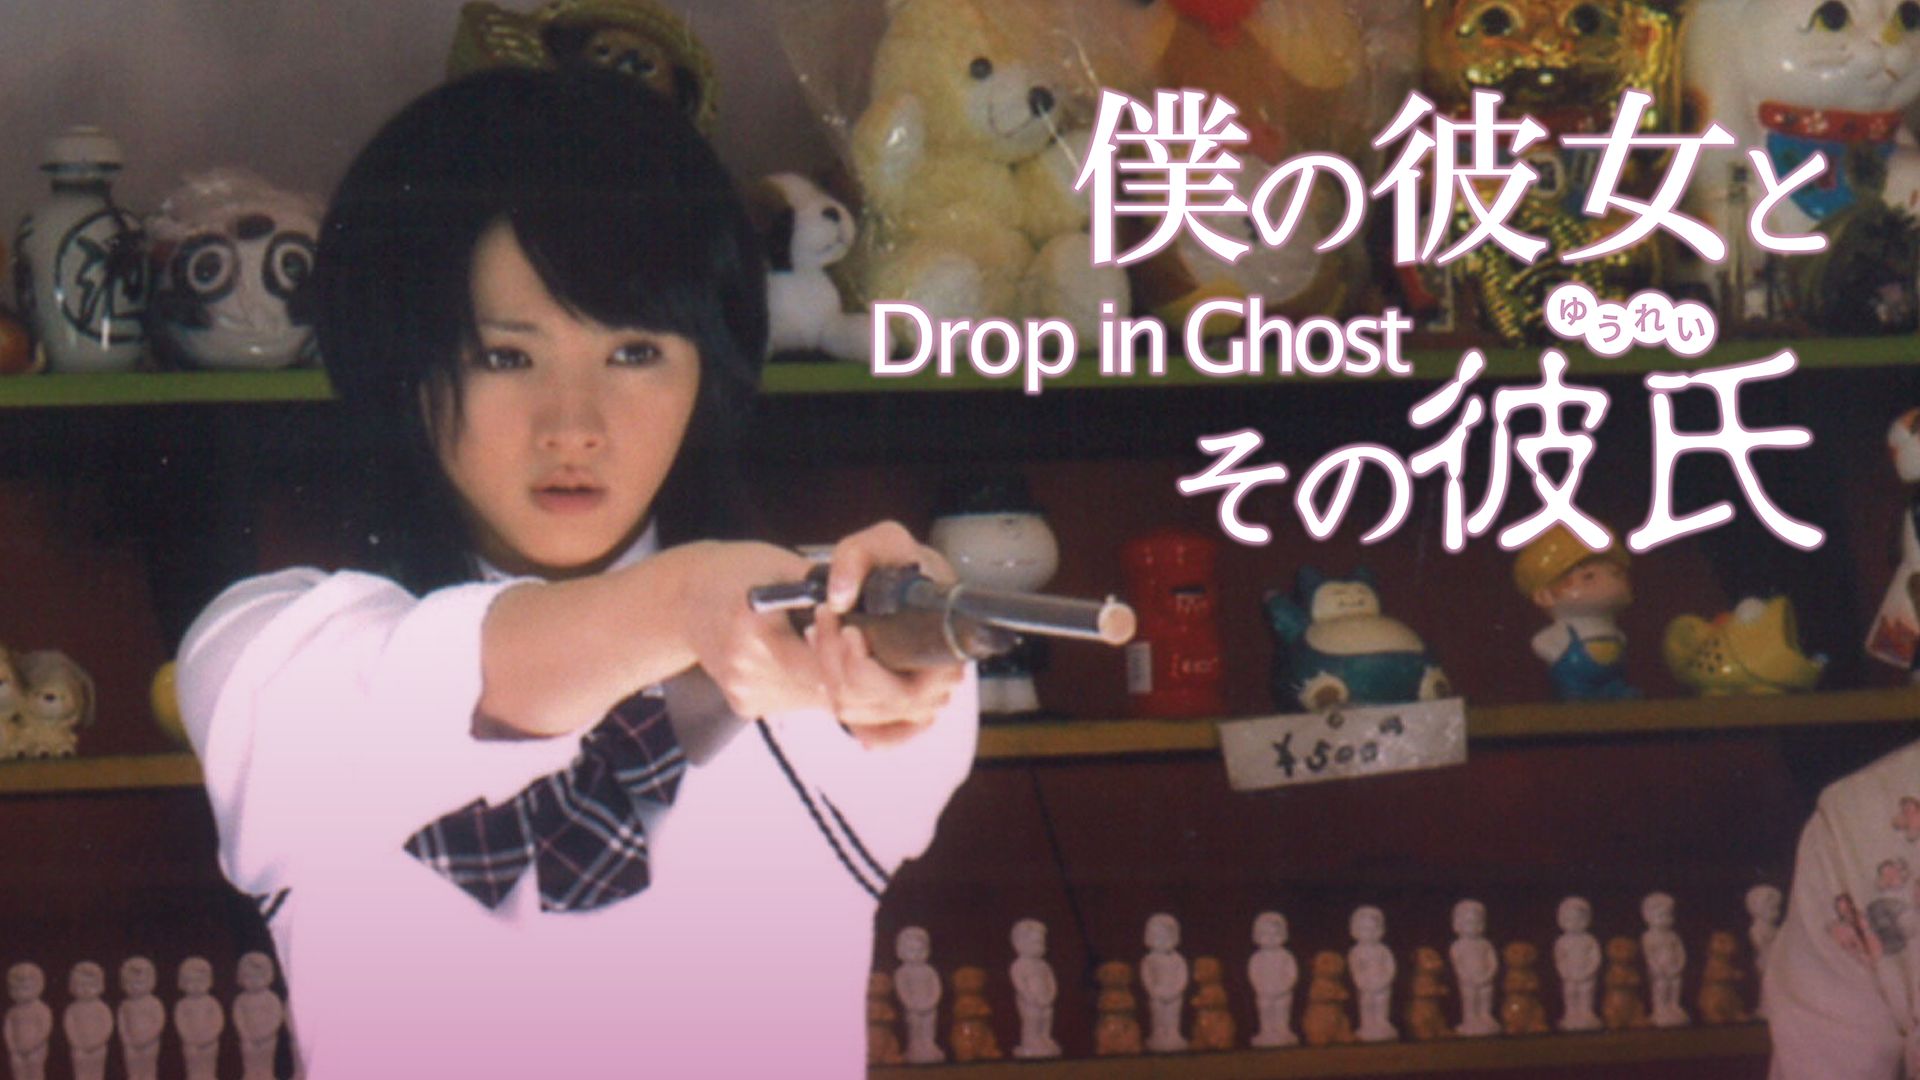 僕の彼女とその彼氏〜Drop in Ghost〜